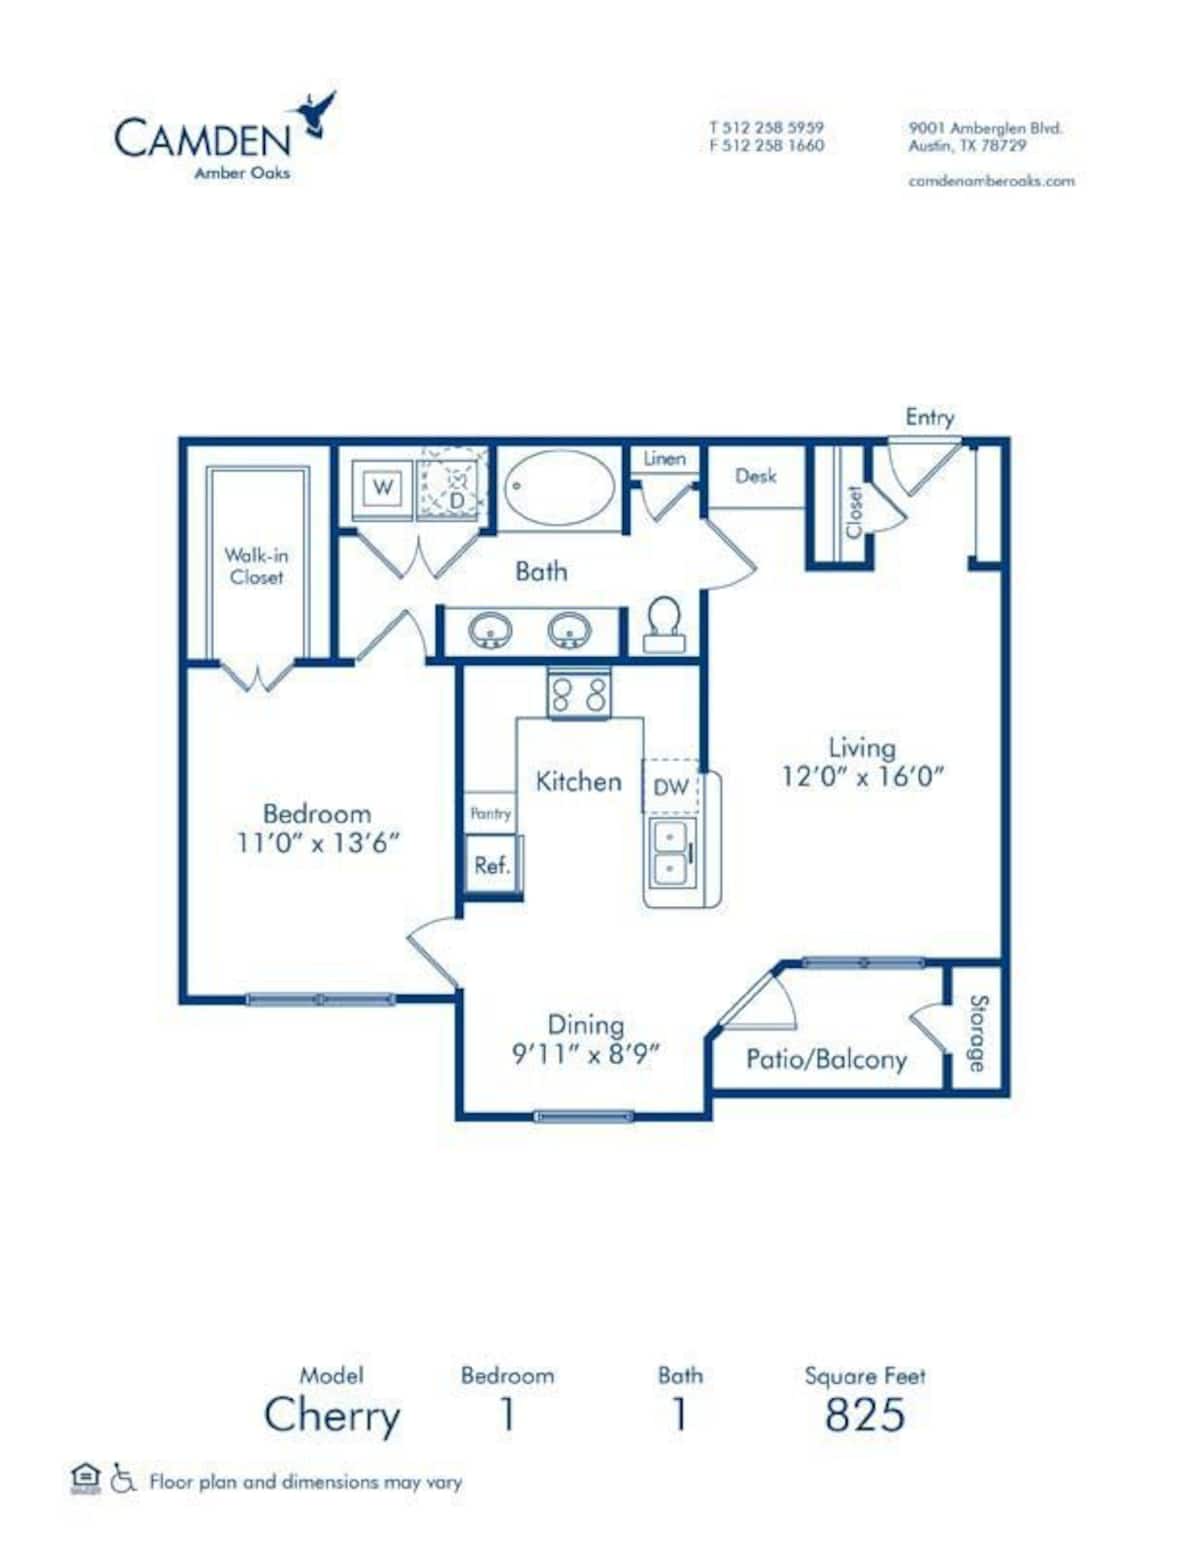 Floorplan diagram for Cherry, showing 1 bedroom